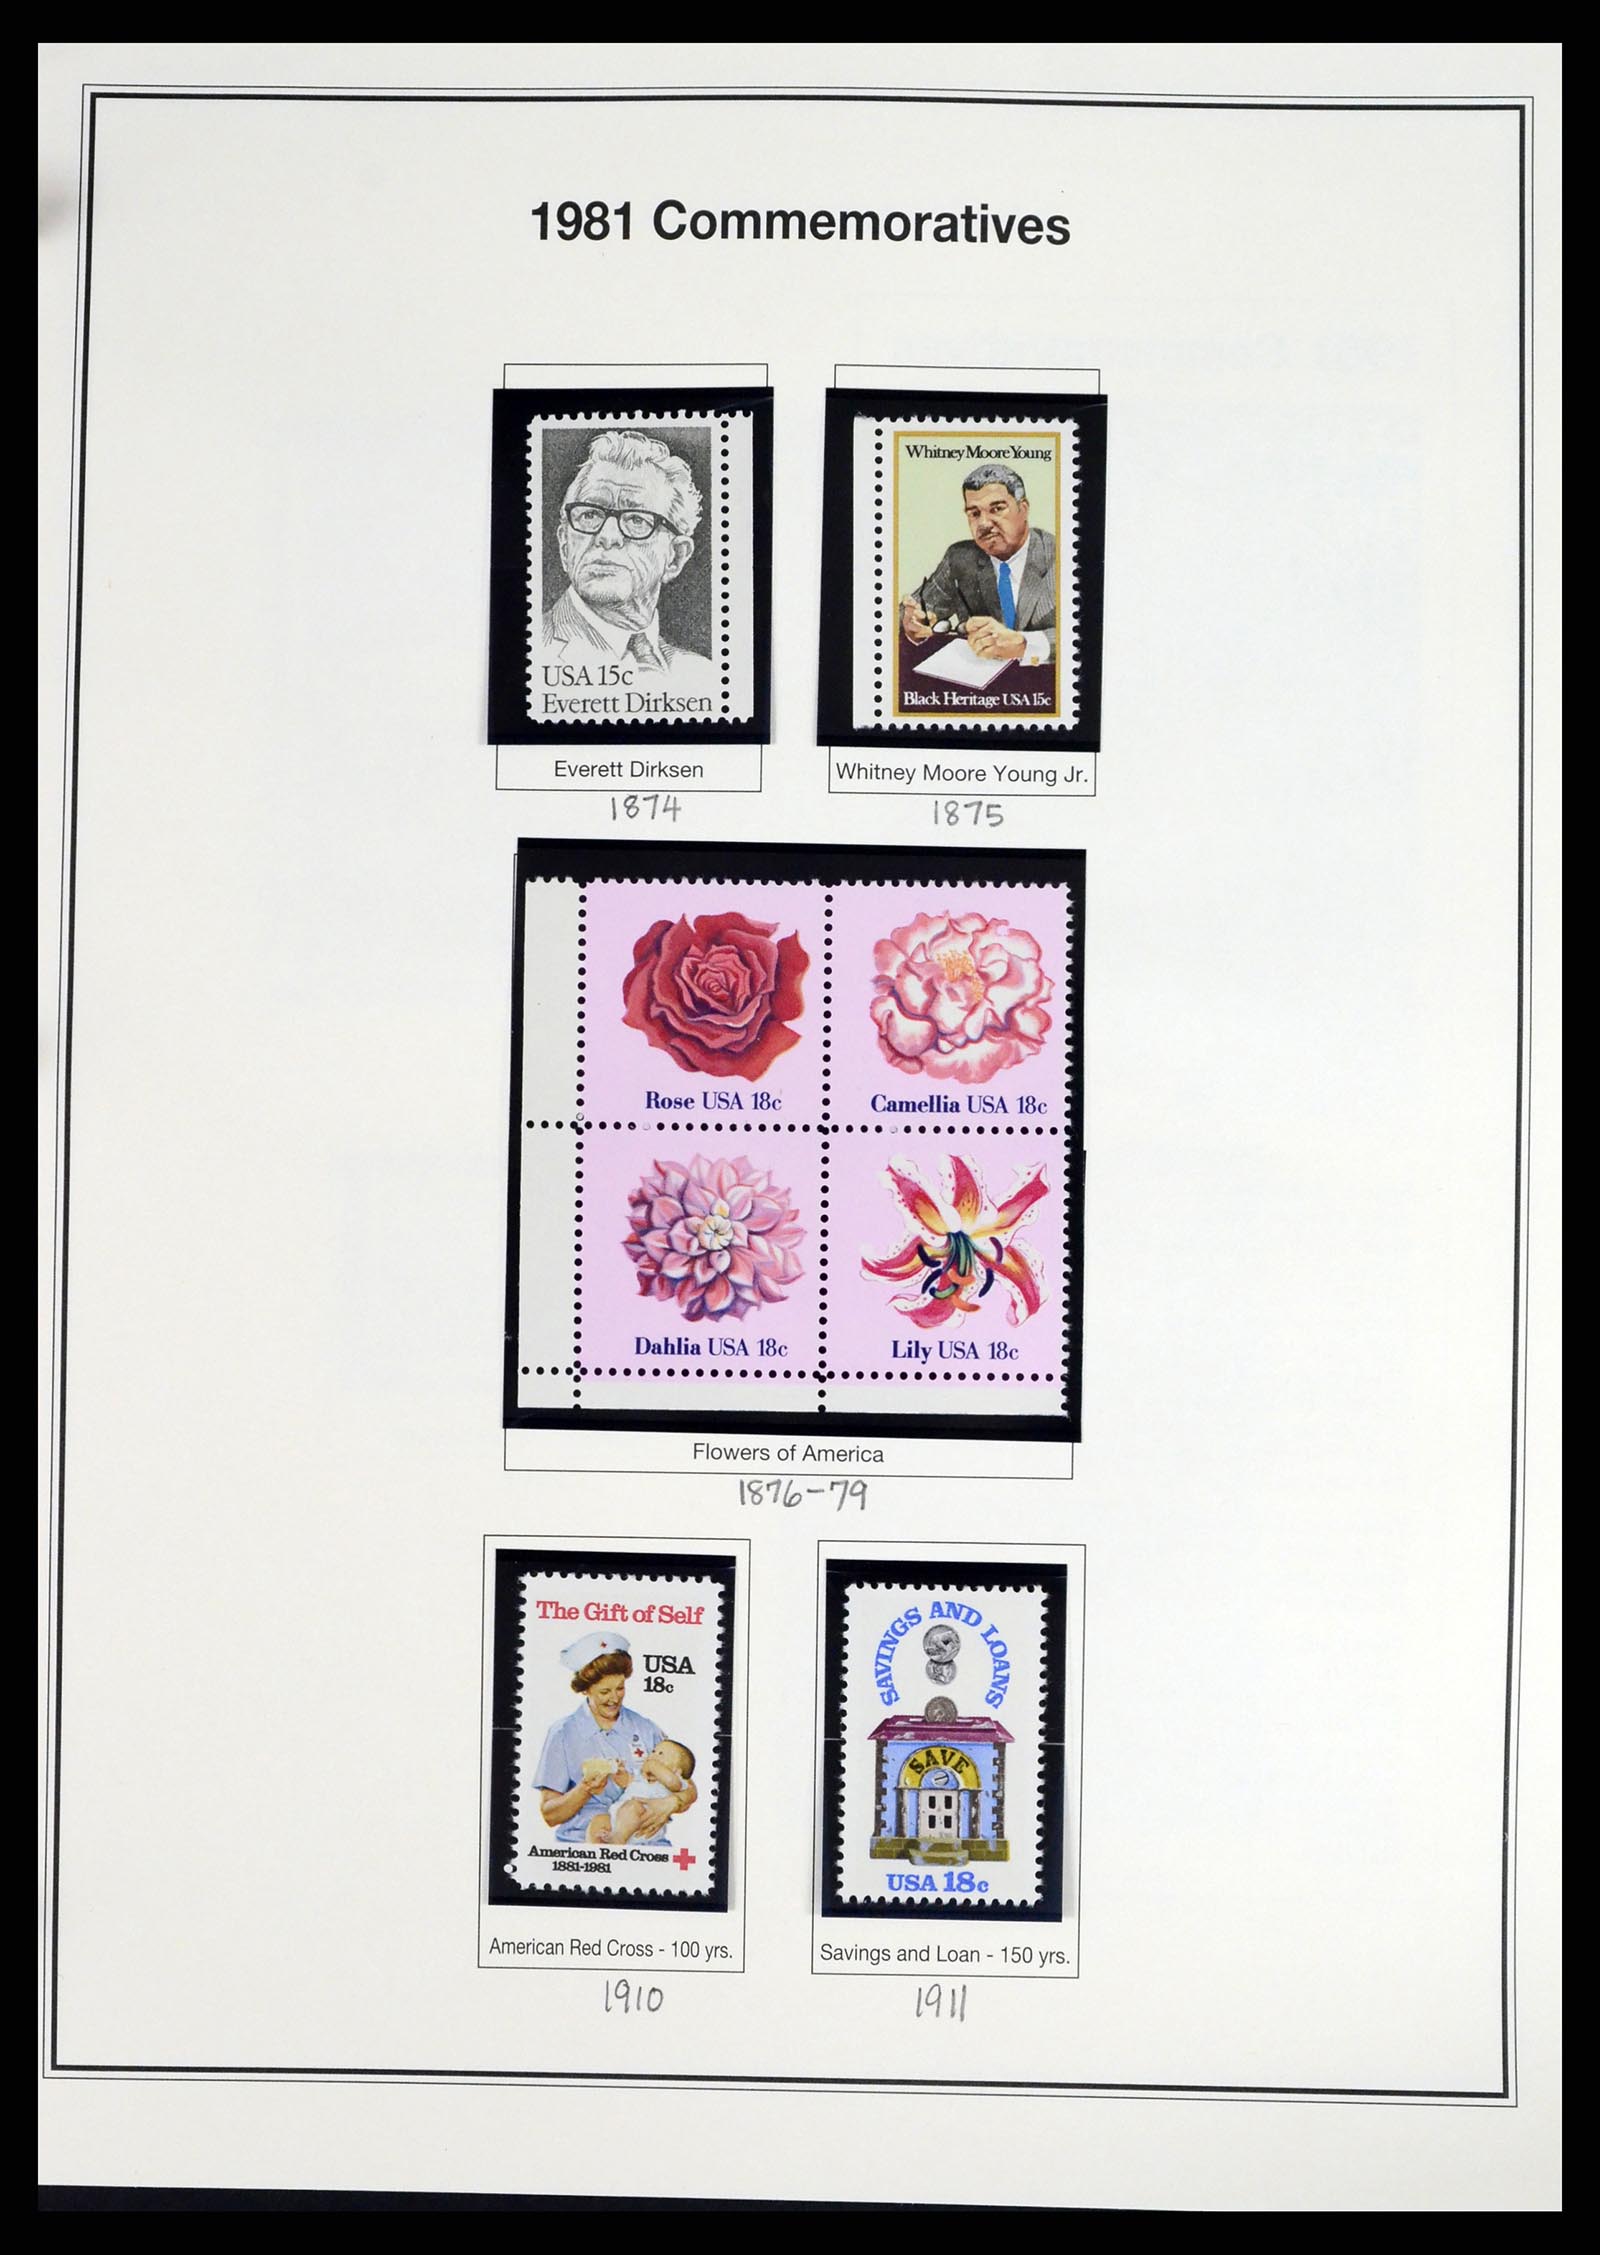 37193 056 - Stamp collection 37193 USA 1970-2020!